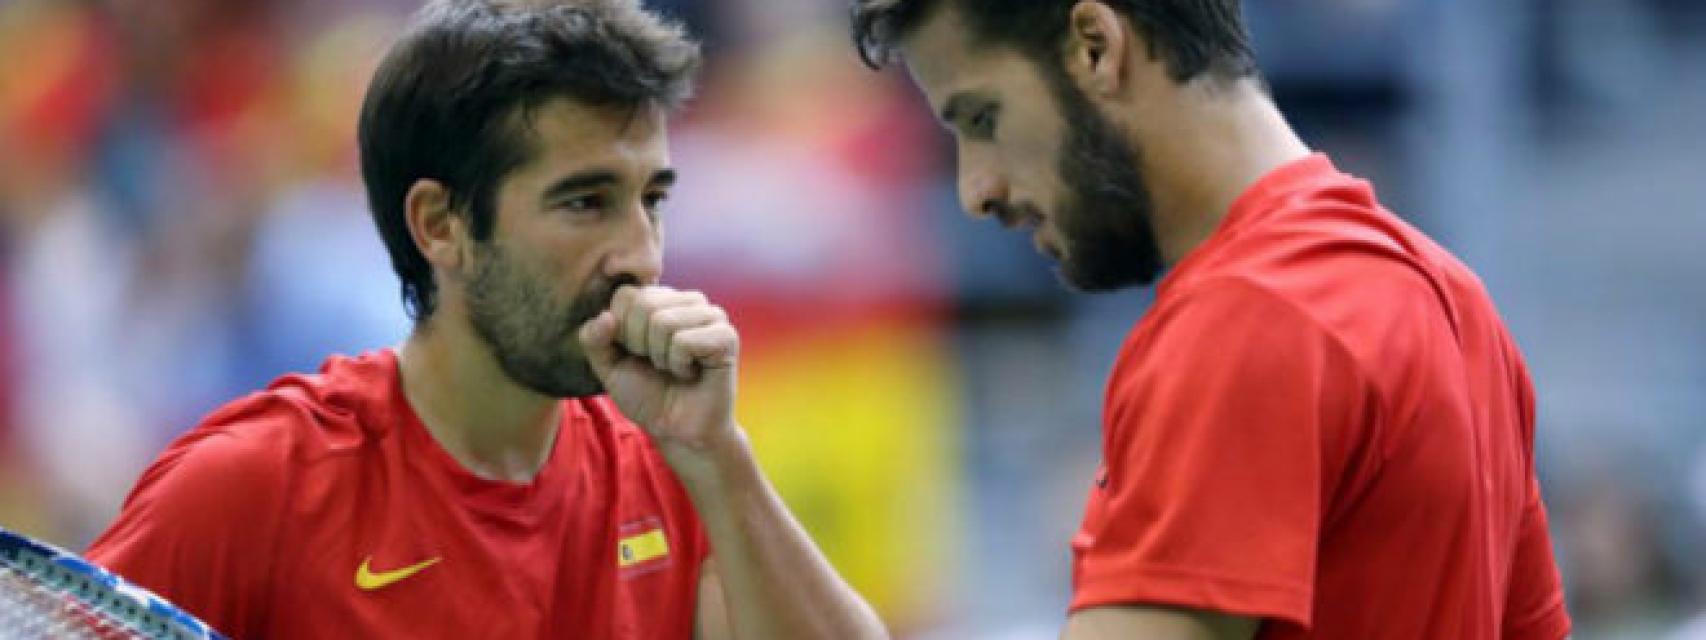 Feliciano López y Marc López, en un partido con España de Copa Davis.